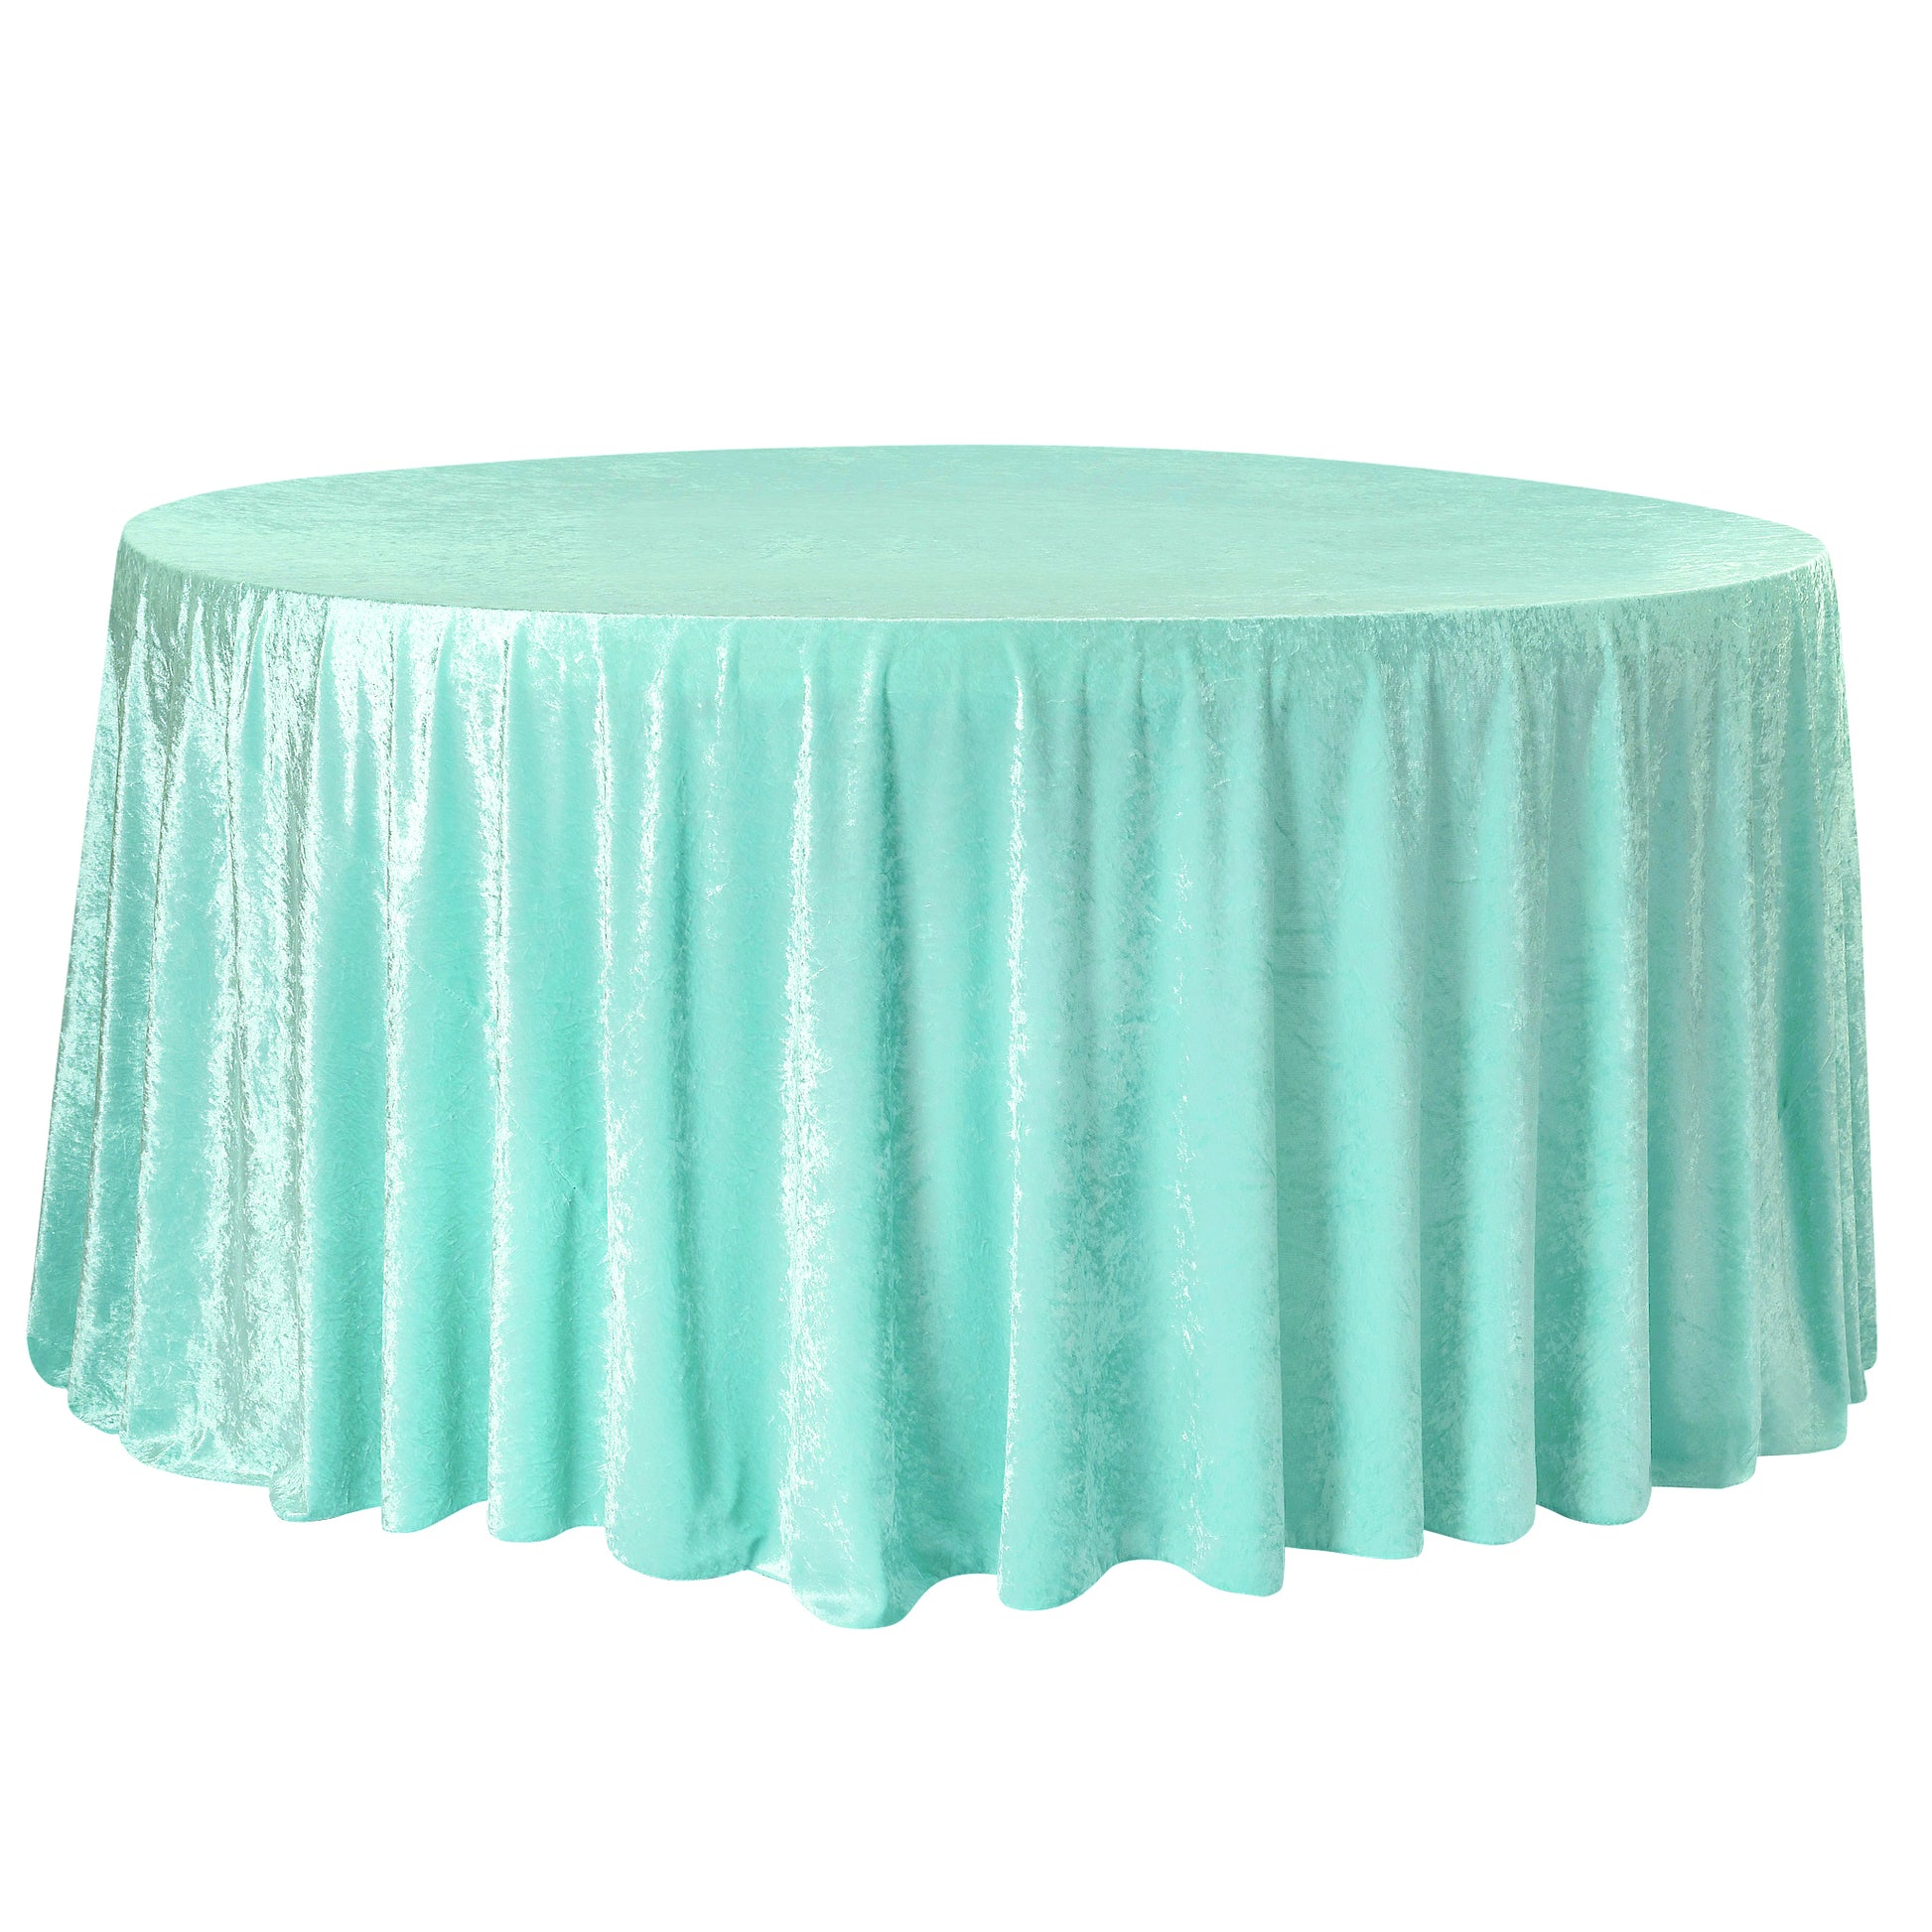 Velvet 120" Round Tablecloth - Light Turquoise - CV Linens